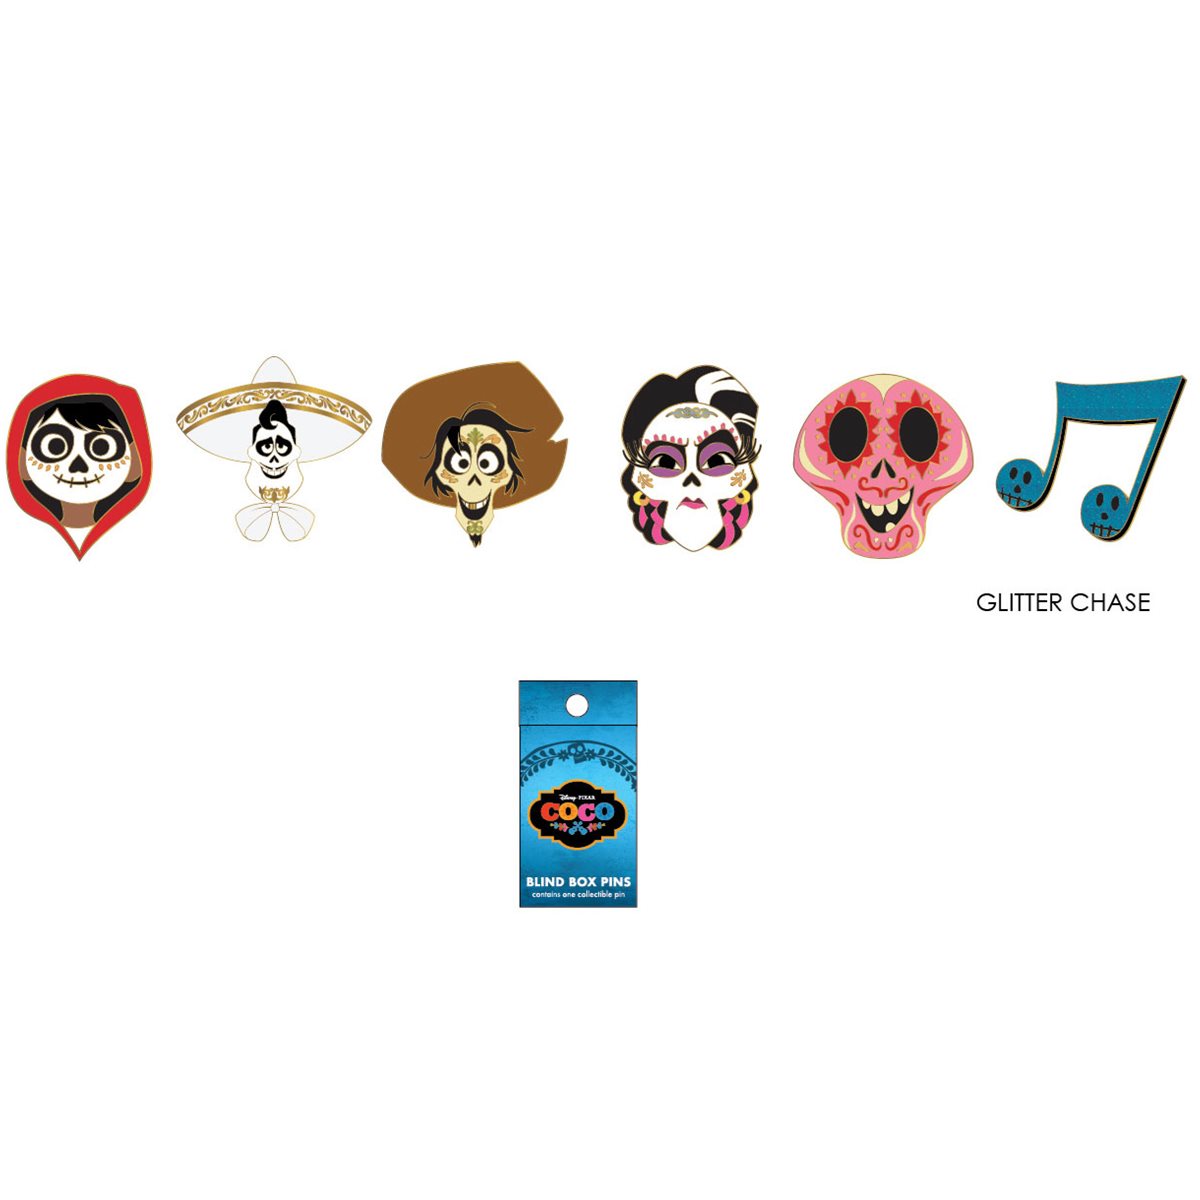 Dan the Pixar Fan: Coco: Pixar Studio Store Exclusive Logo Pin